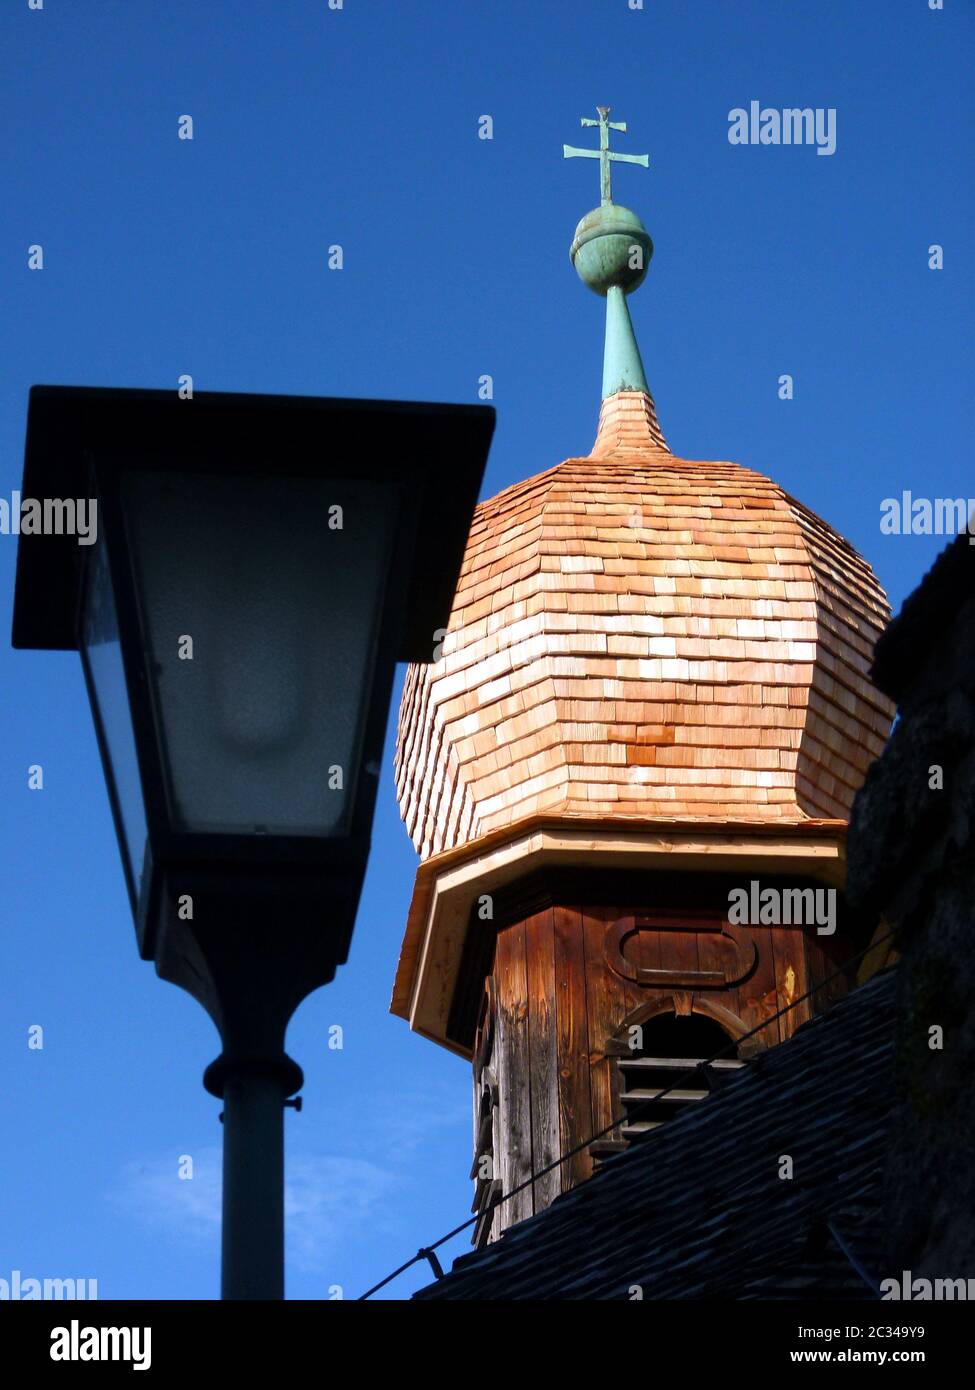 Tour d'oignon avec sommet en cuivre d'une église médiévale en bois contre un ciel bleu Banque D'Images